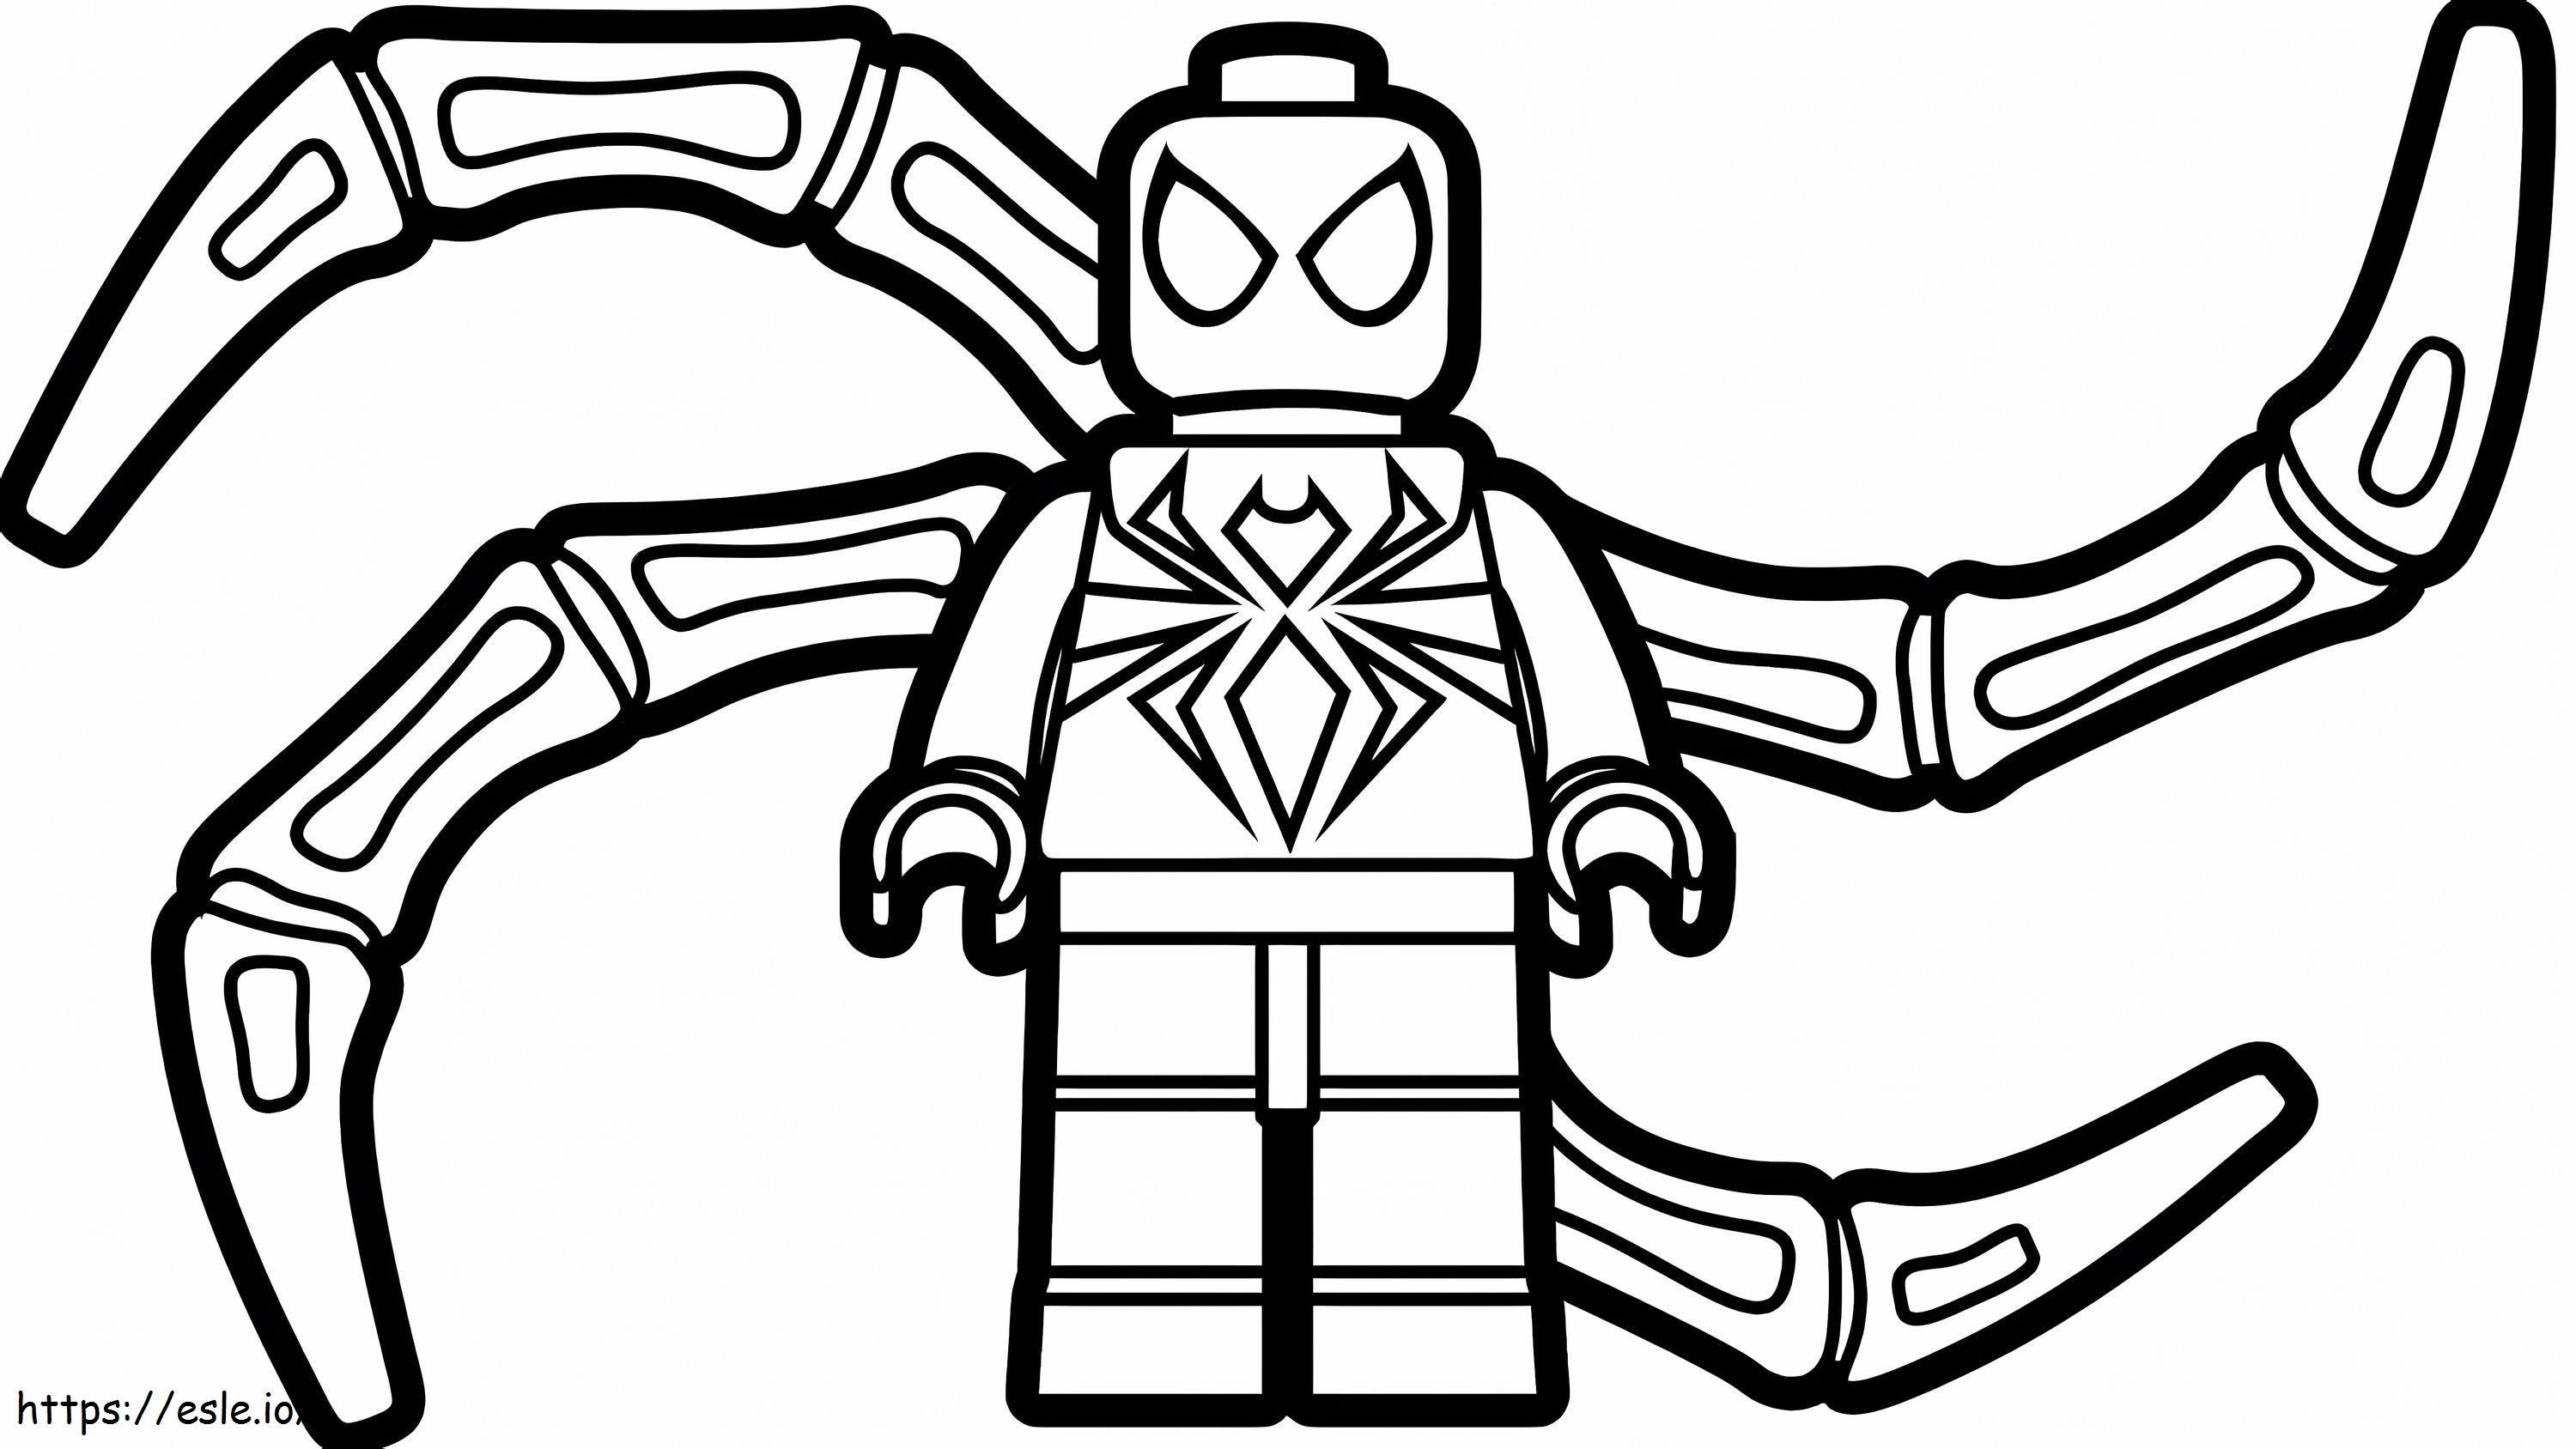 Lego Homem-Aranha de Ferro para colorir